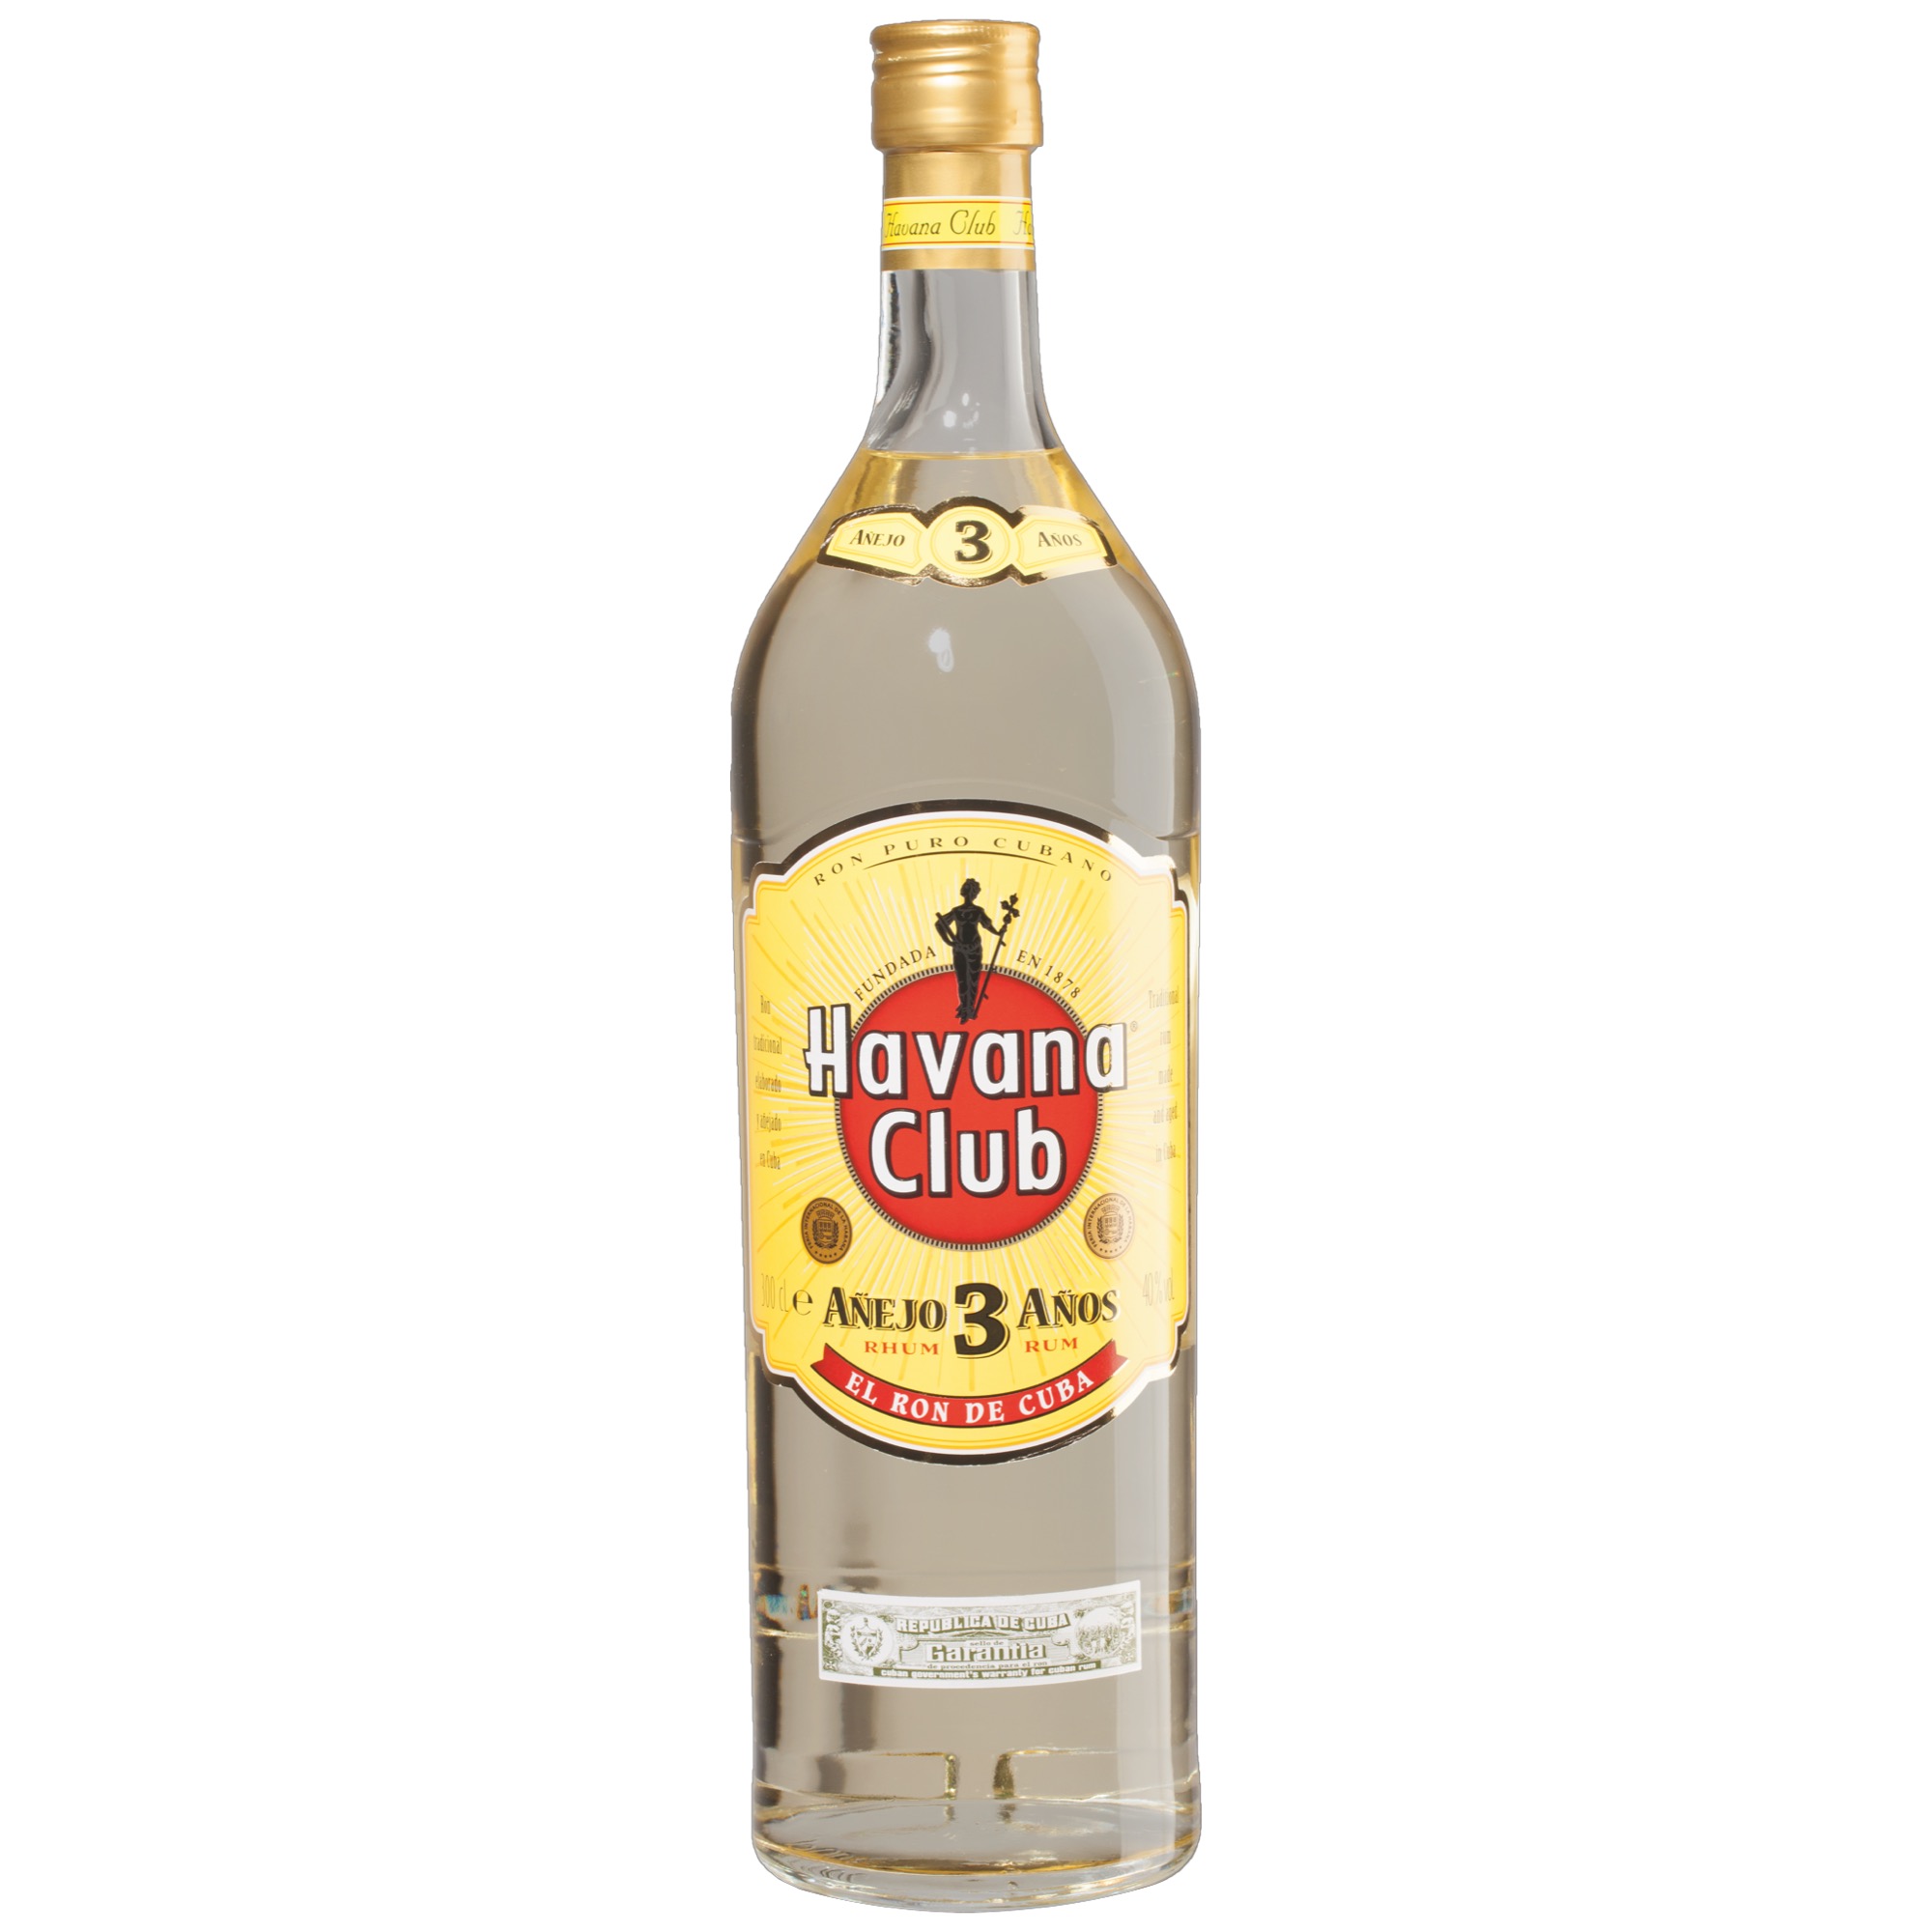 Havana Club 3y 3l